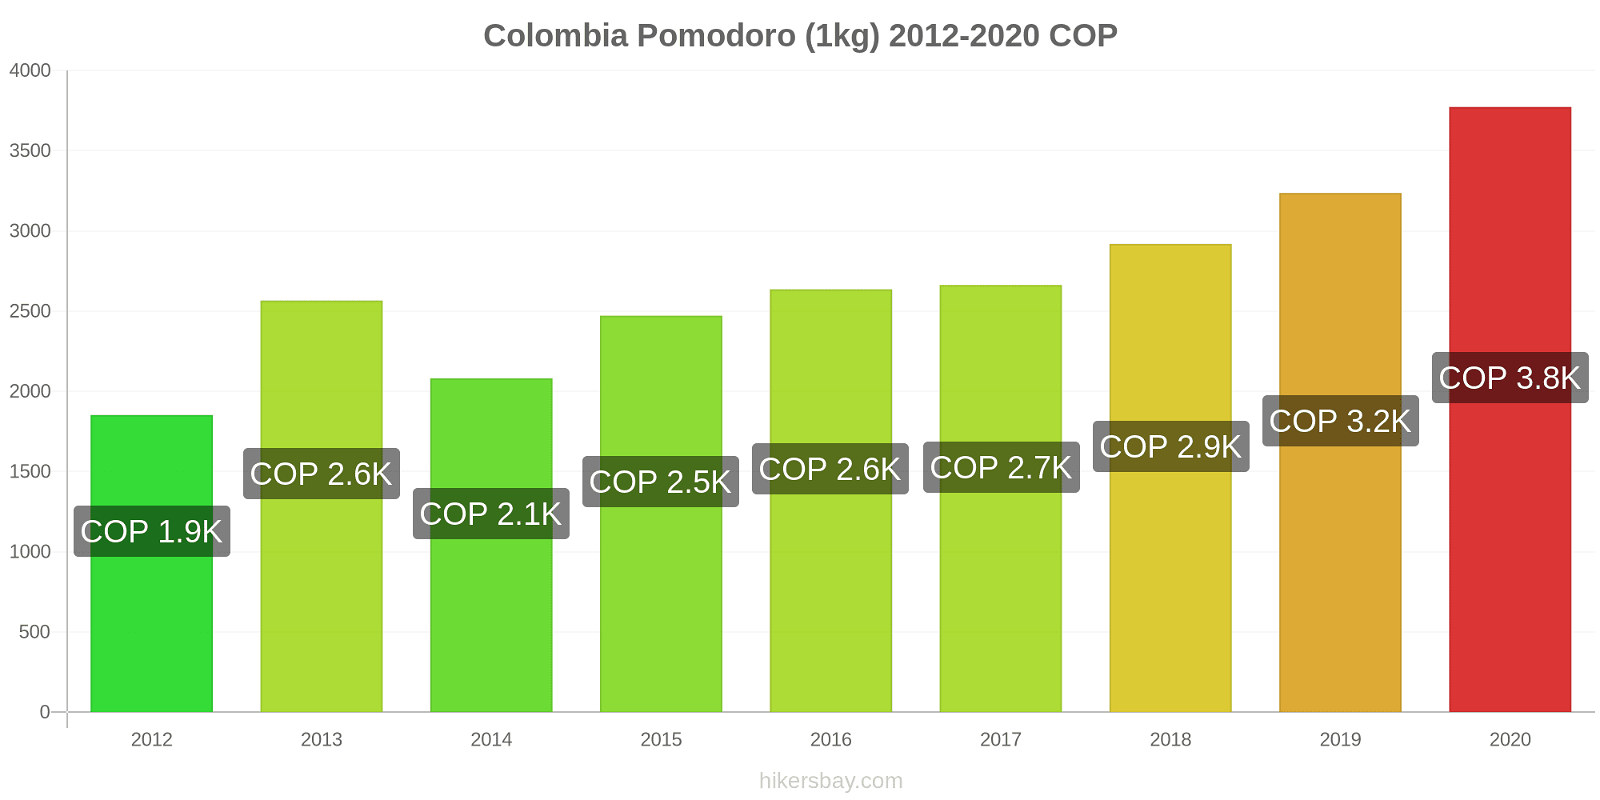 Colombia variazioni di prezzo Pomodoro (1kg) hikersbay.com